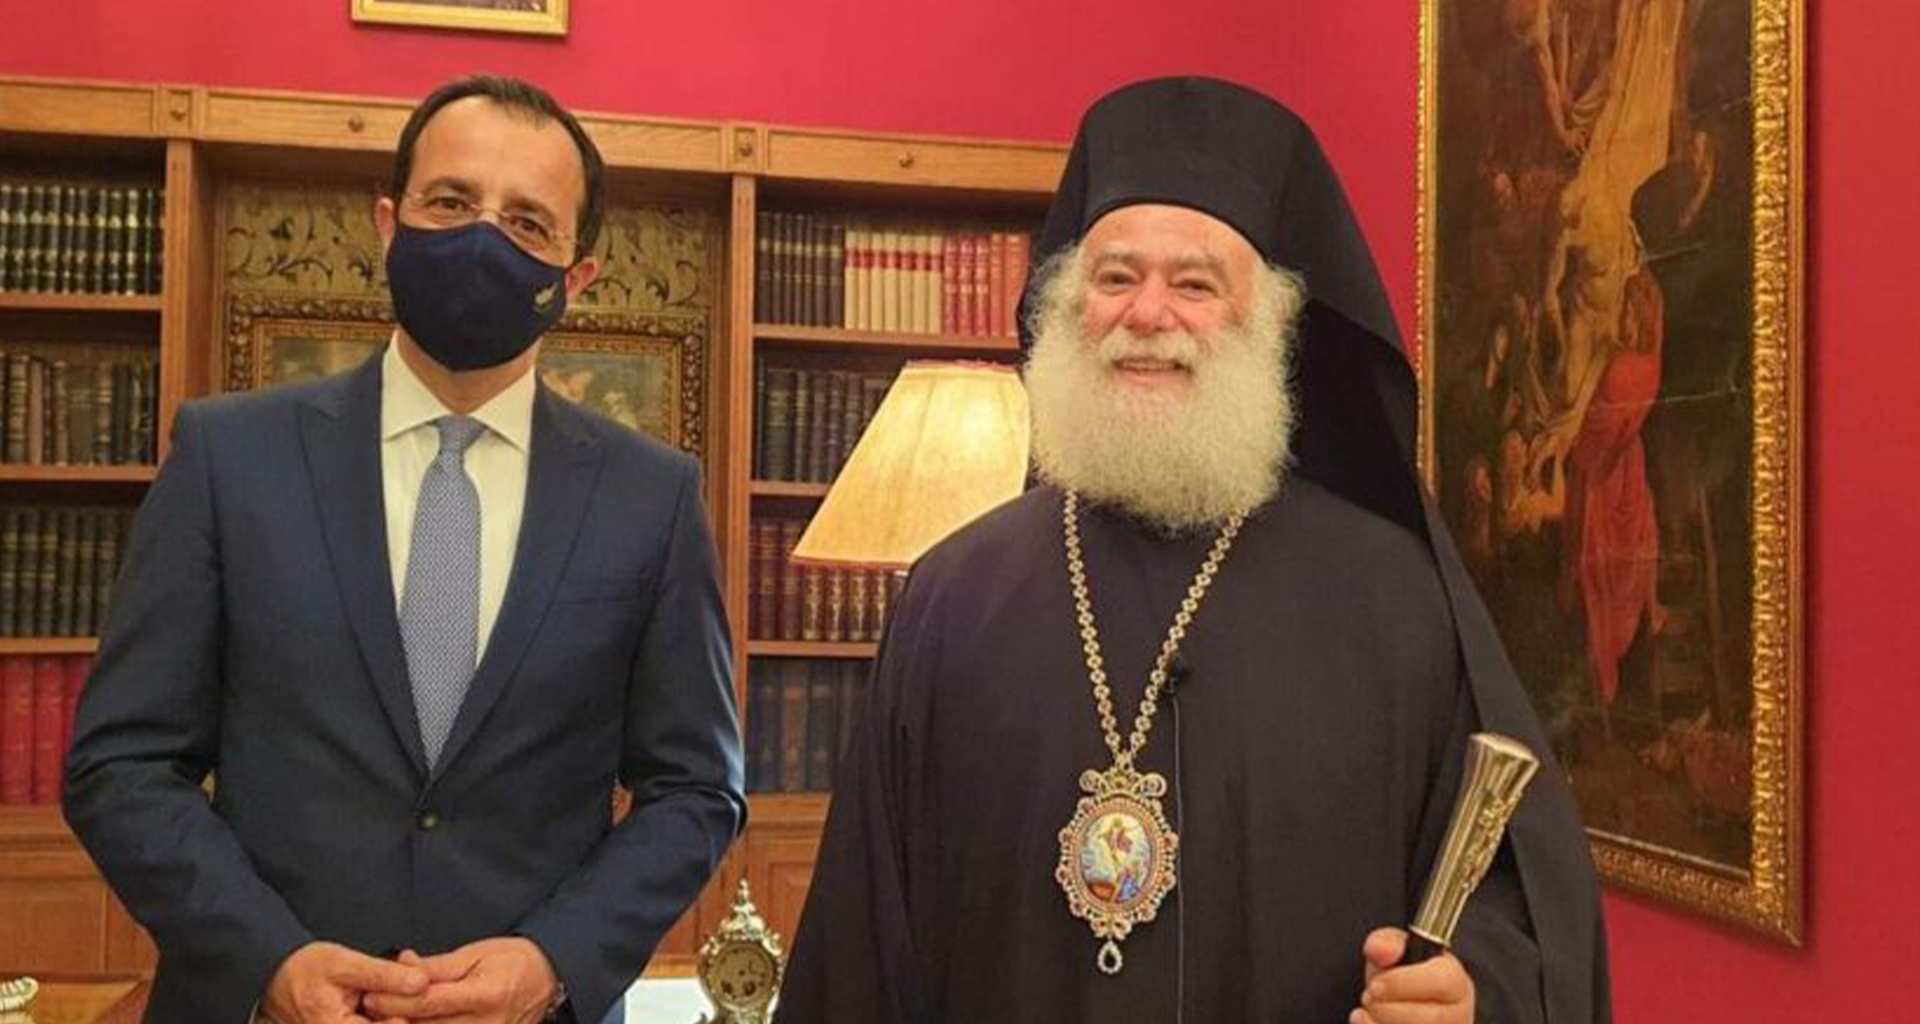 Συγχαρητήριο γράμμα προς τον νέο Προέδρο της Κυπριακής Δημοκρατίας απέστειλε ο Πατριάρχης Αλεξανδρείας Θεόδωρος